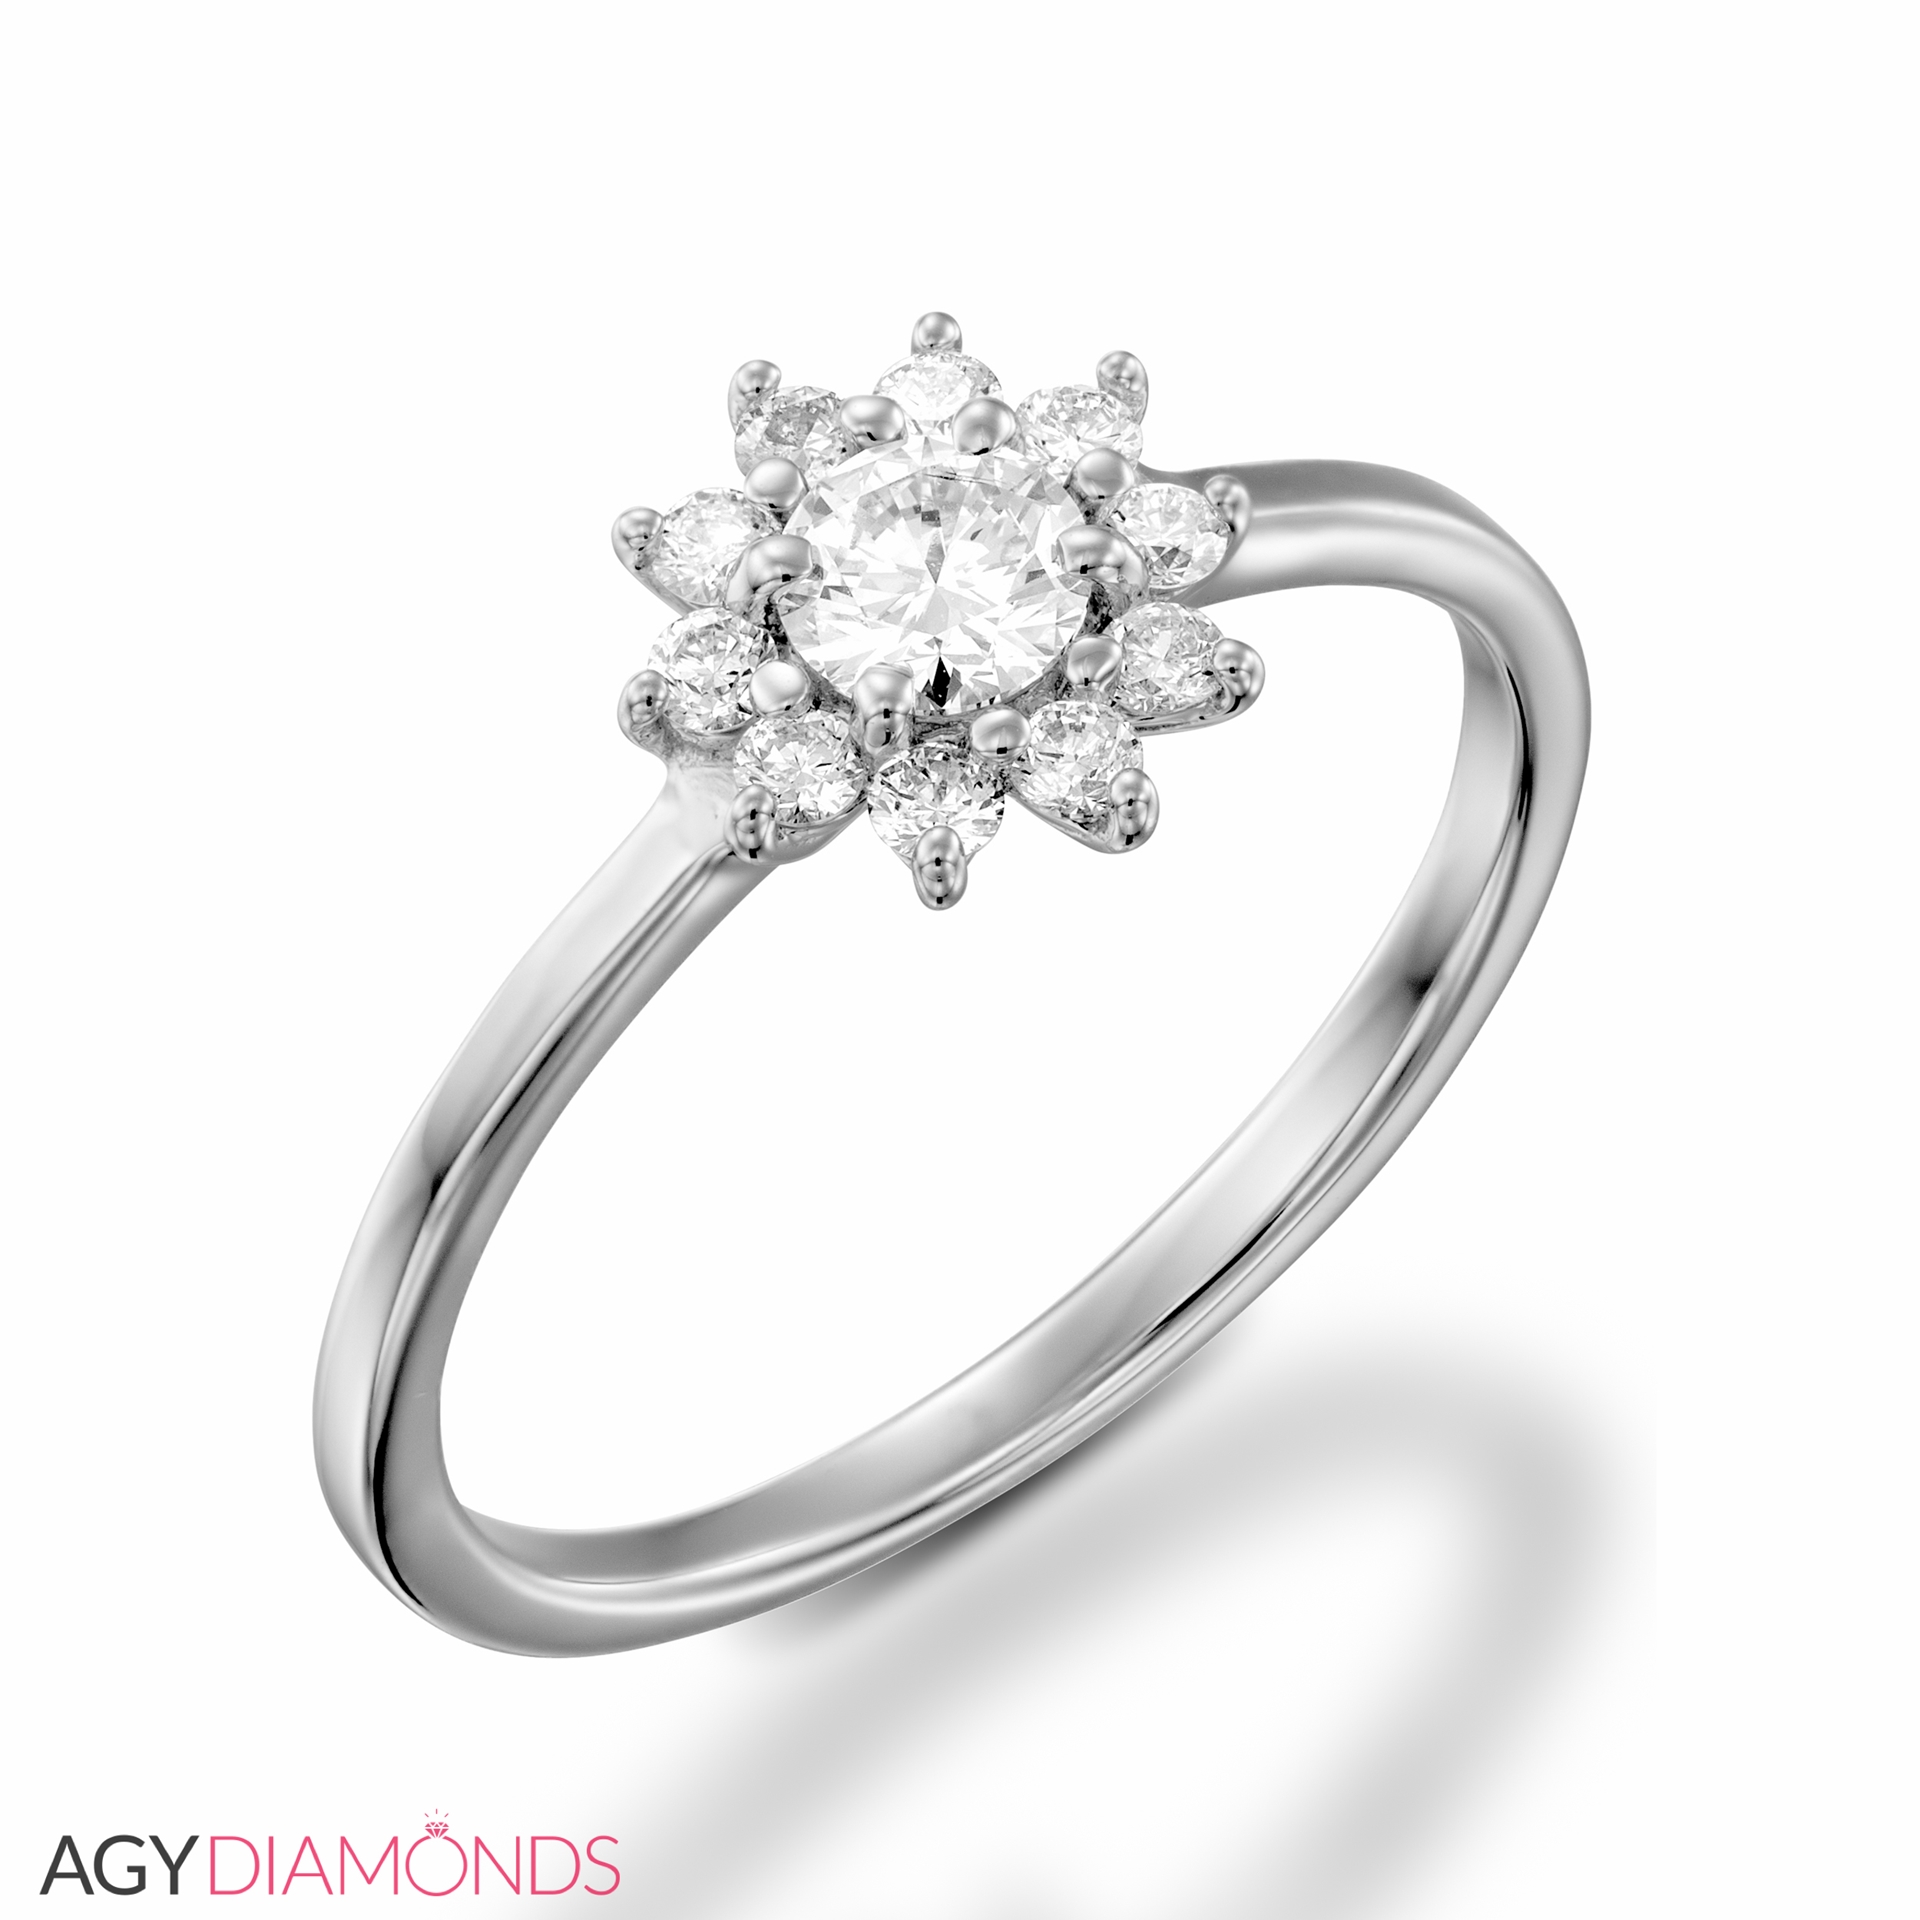 KATARINA Diamond Cluster Engagement Ring in 14K Gold (1/2 cttw, G-H, I2-I3)  : Amazon.co.uk: Fashion